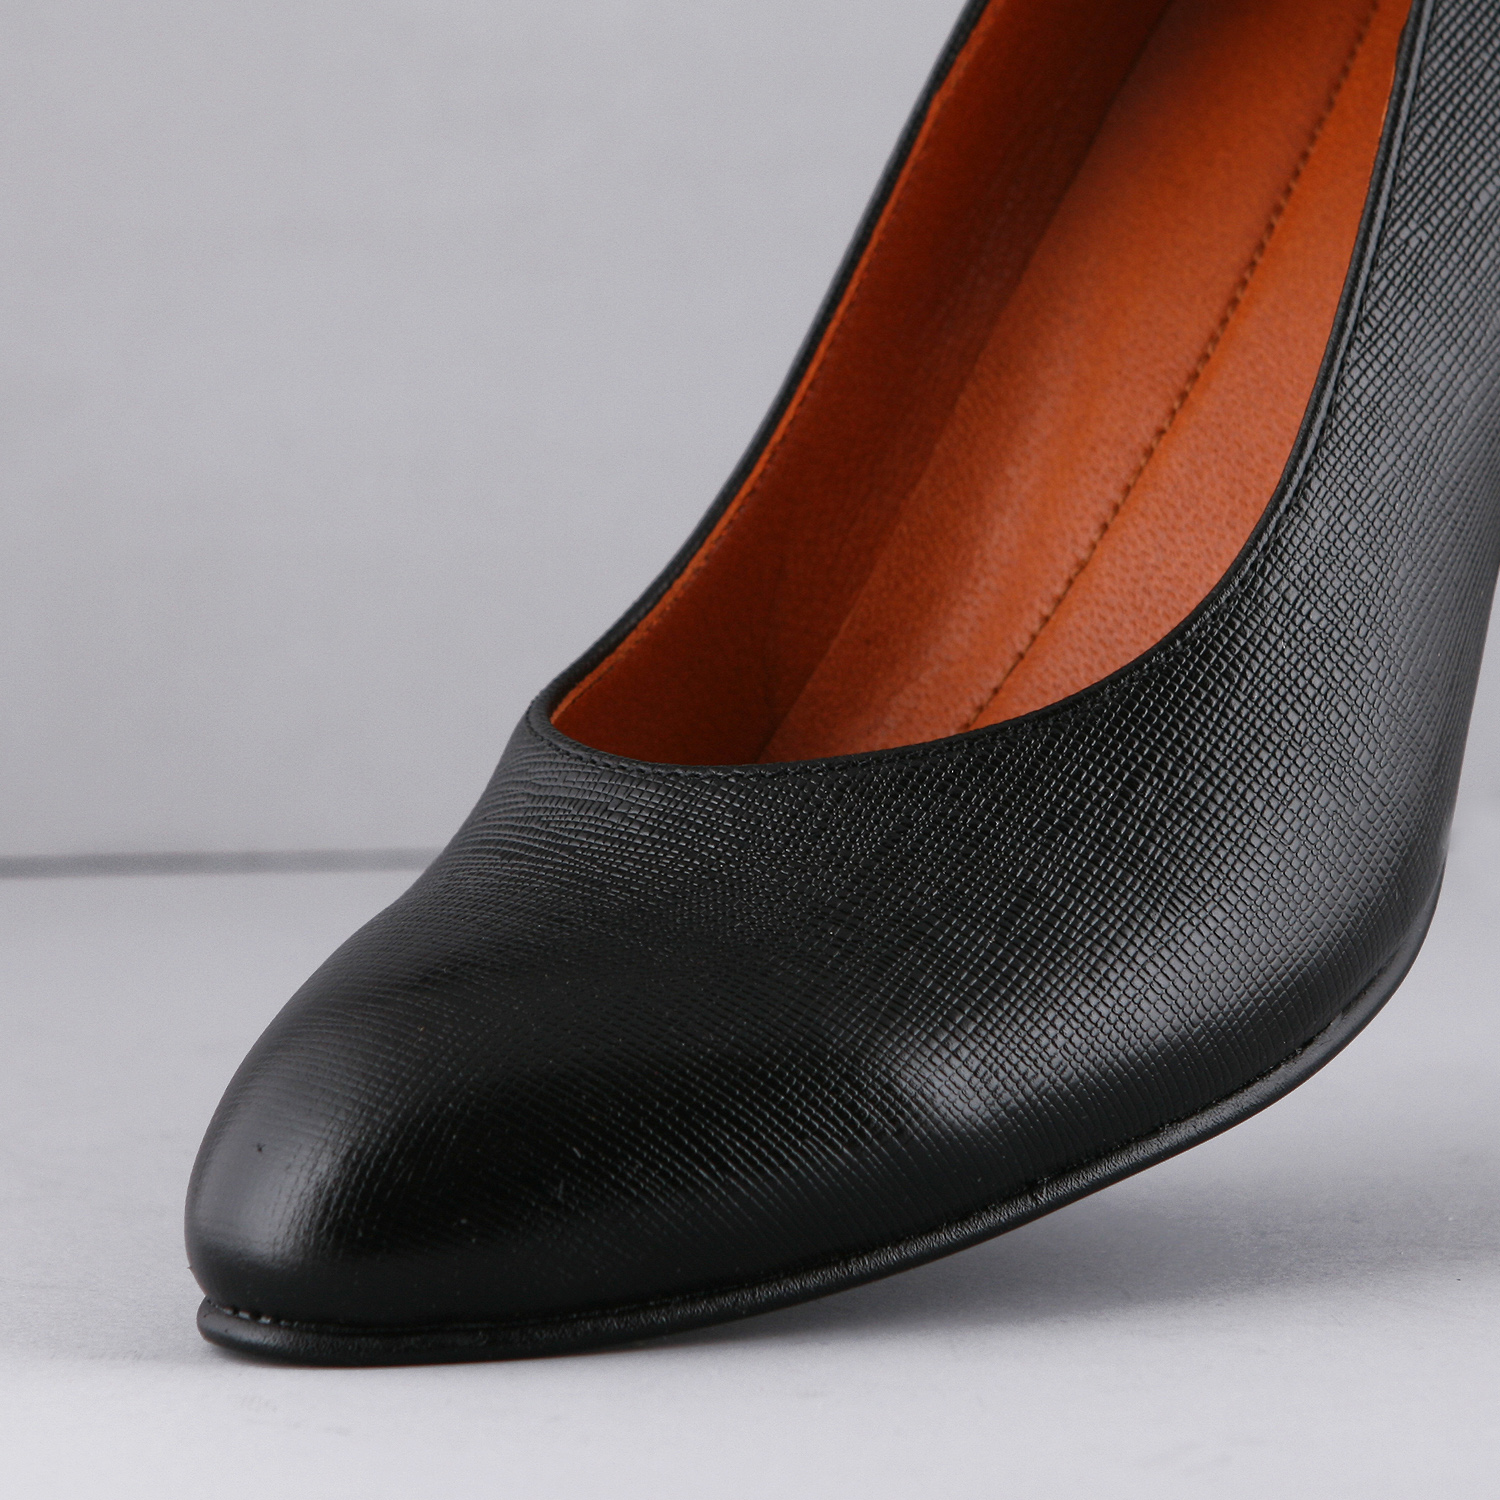 ست کیف و کفش زنانه چرم یلسان مدل مارال کد ANA-HRM-901-msk -  - 13